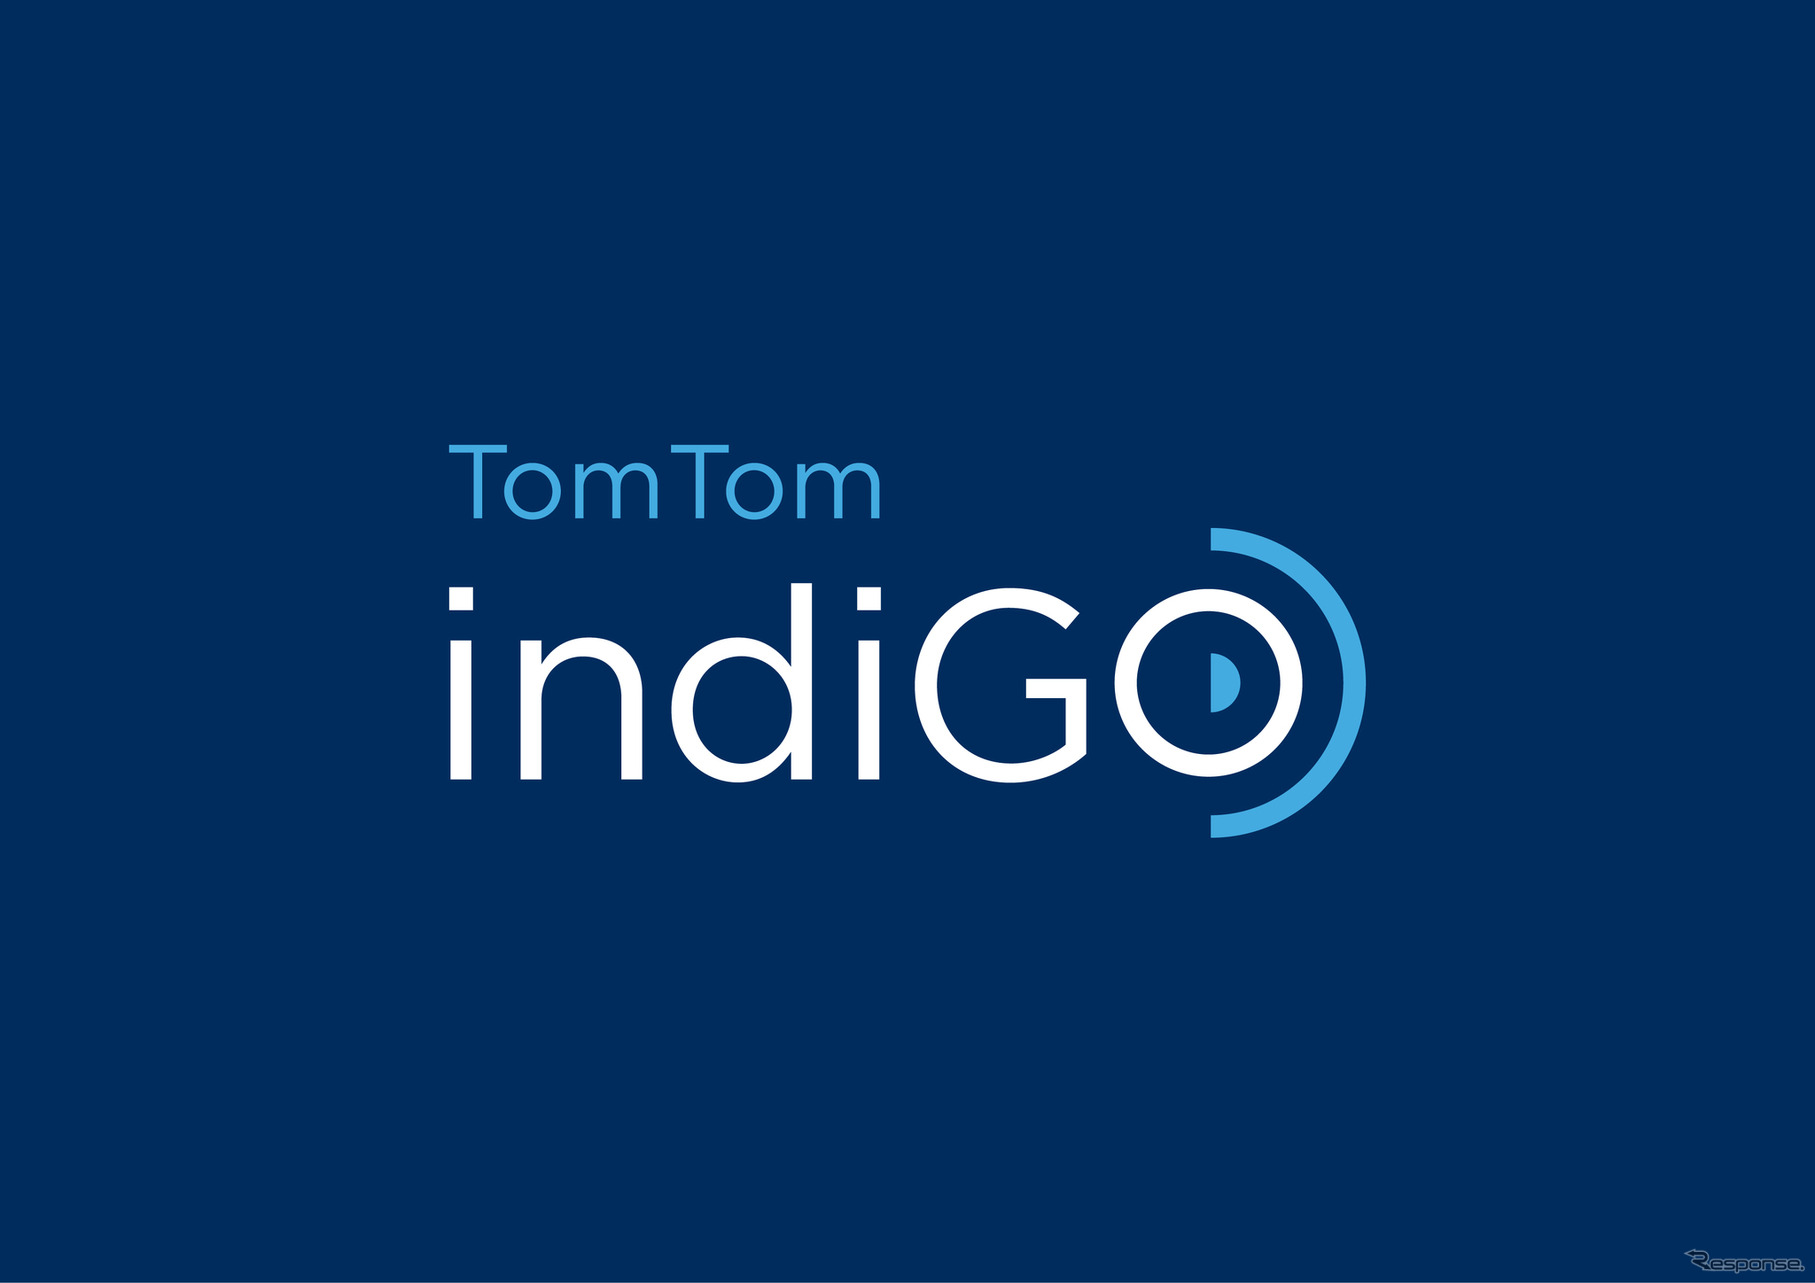 世界初の自動車メーカー向けオープンプラットフォーム「TomTom IndiGO」